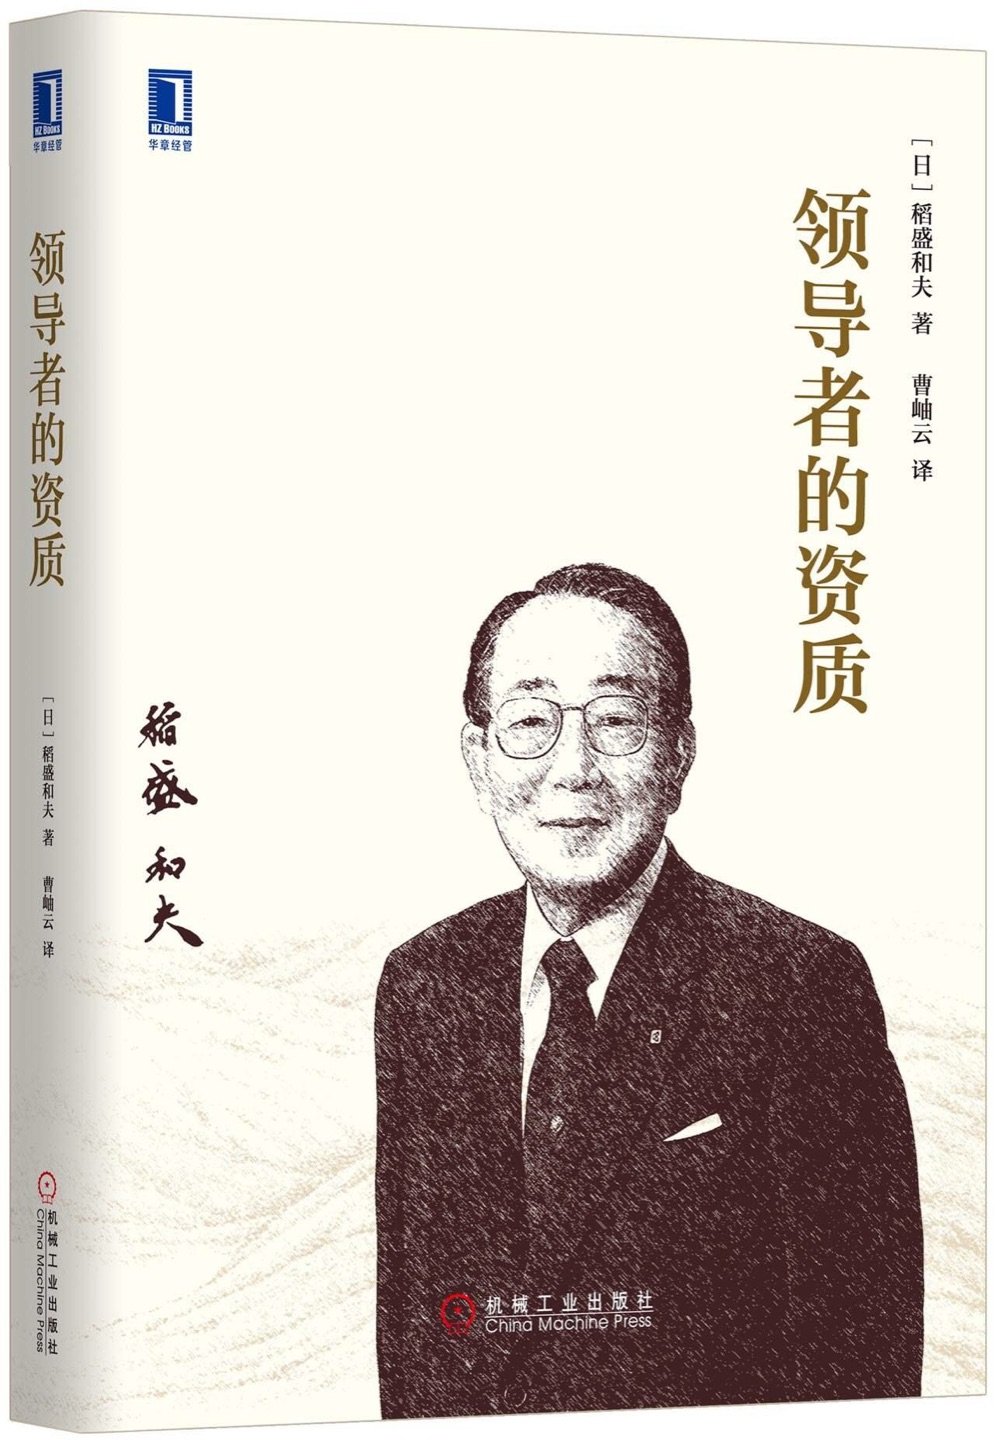 《领导者的资质》介绍日本经营之圣稻盛和夫的经营哲学，含#的资质、#的人格、#的十项职责、企业统治的要诀，以及企业家学习体会等内容